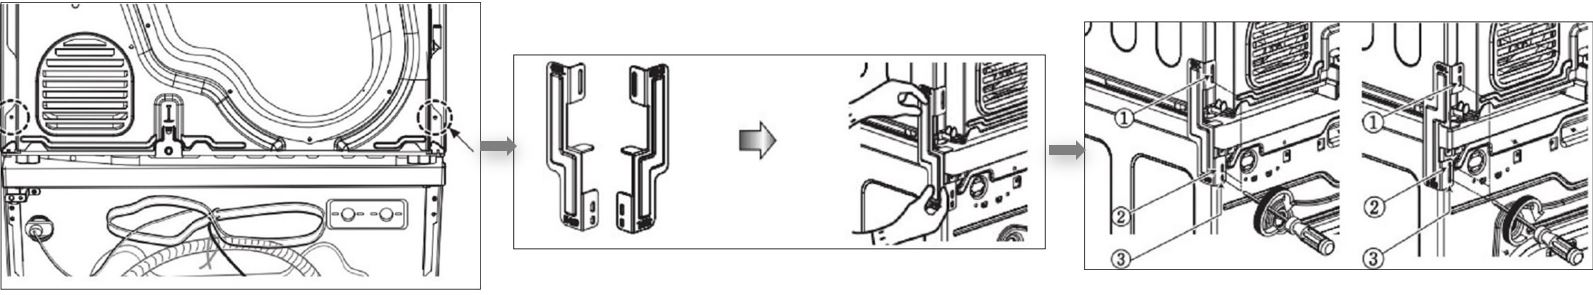 2. Hướng dẫn cách lắp đặt máy sấy Electrolux chồng lên thiết bị giặt khác